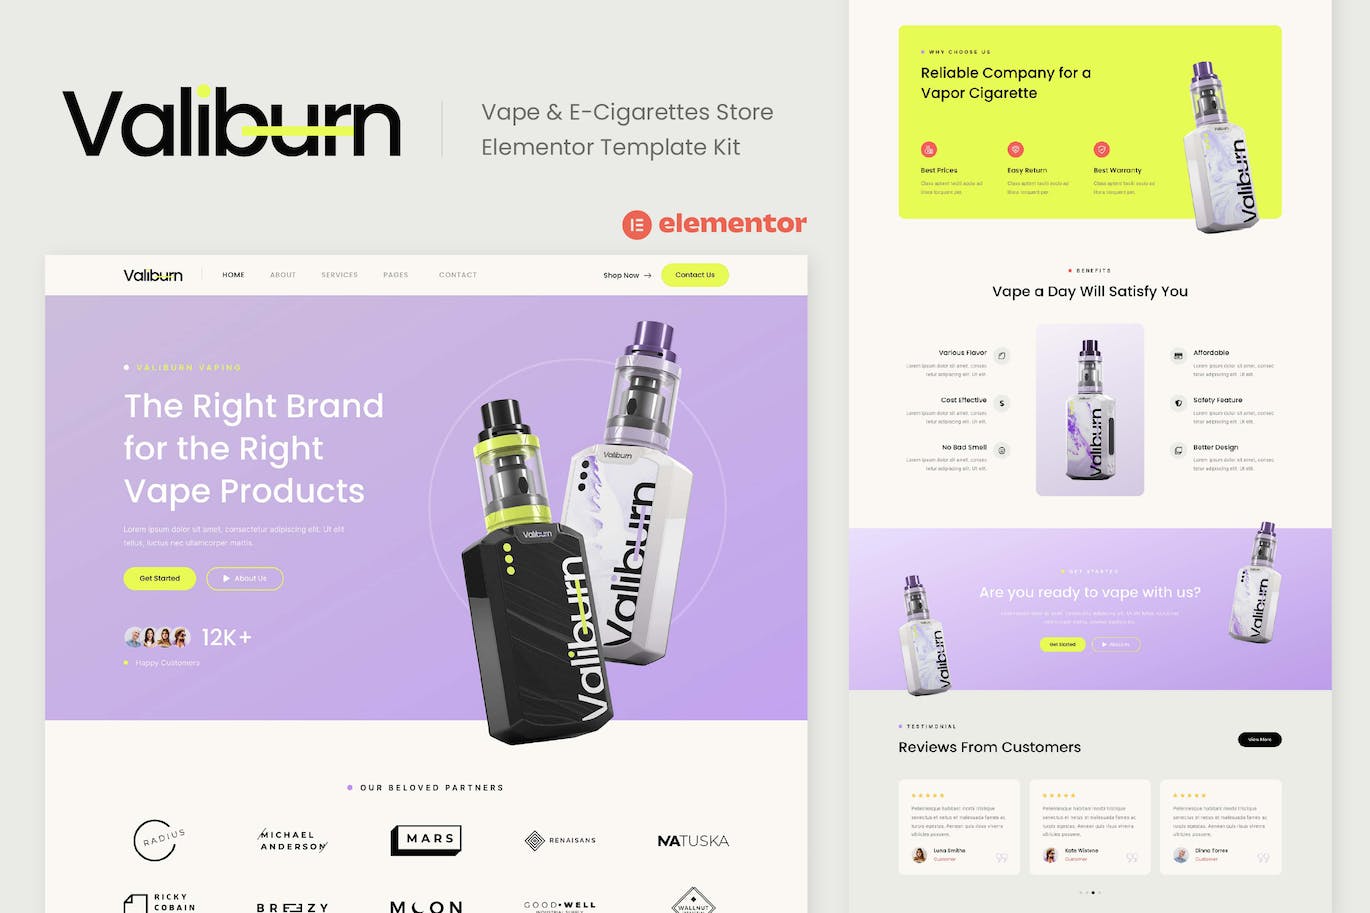 Valiburn - Vape & E-Cigarettes Store Elementor Template Kit